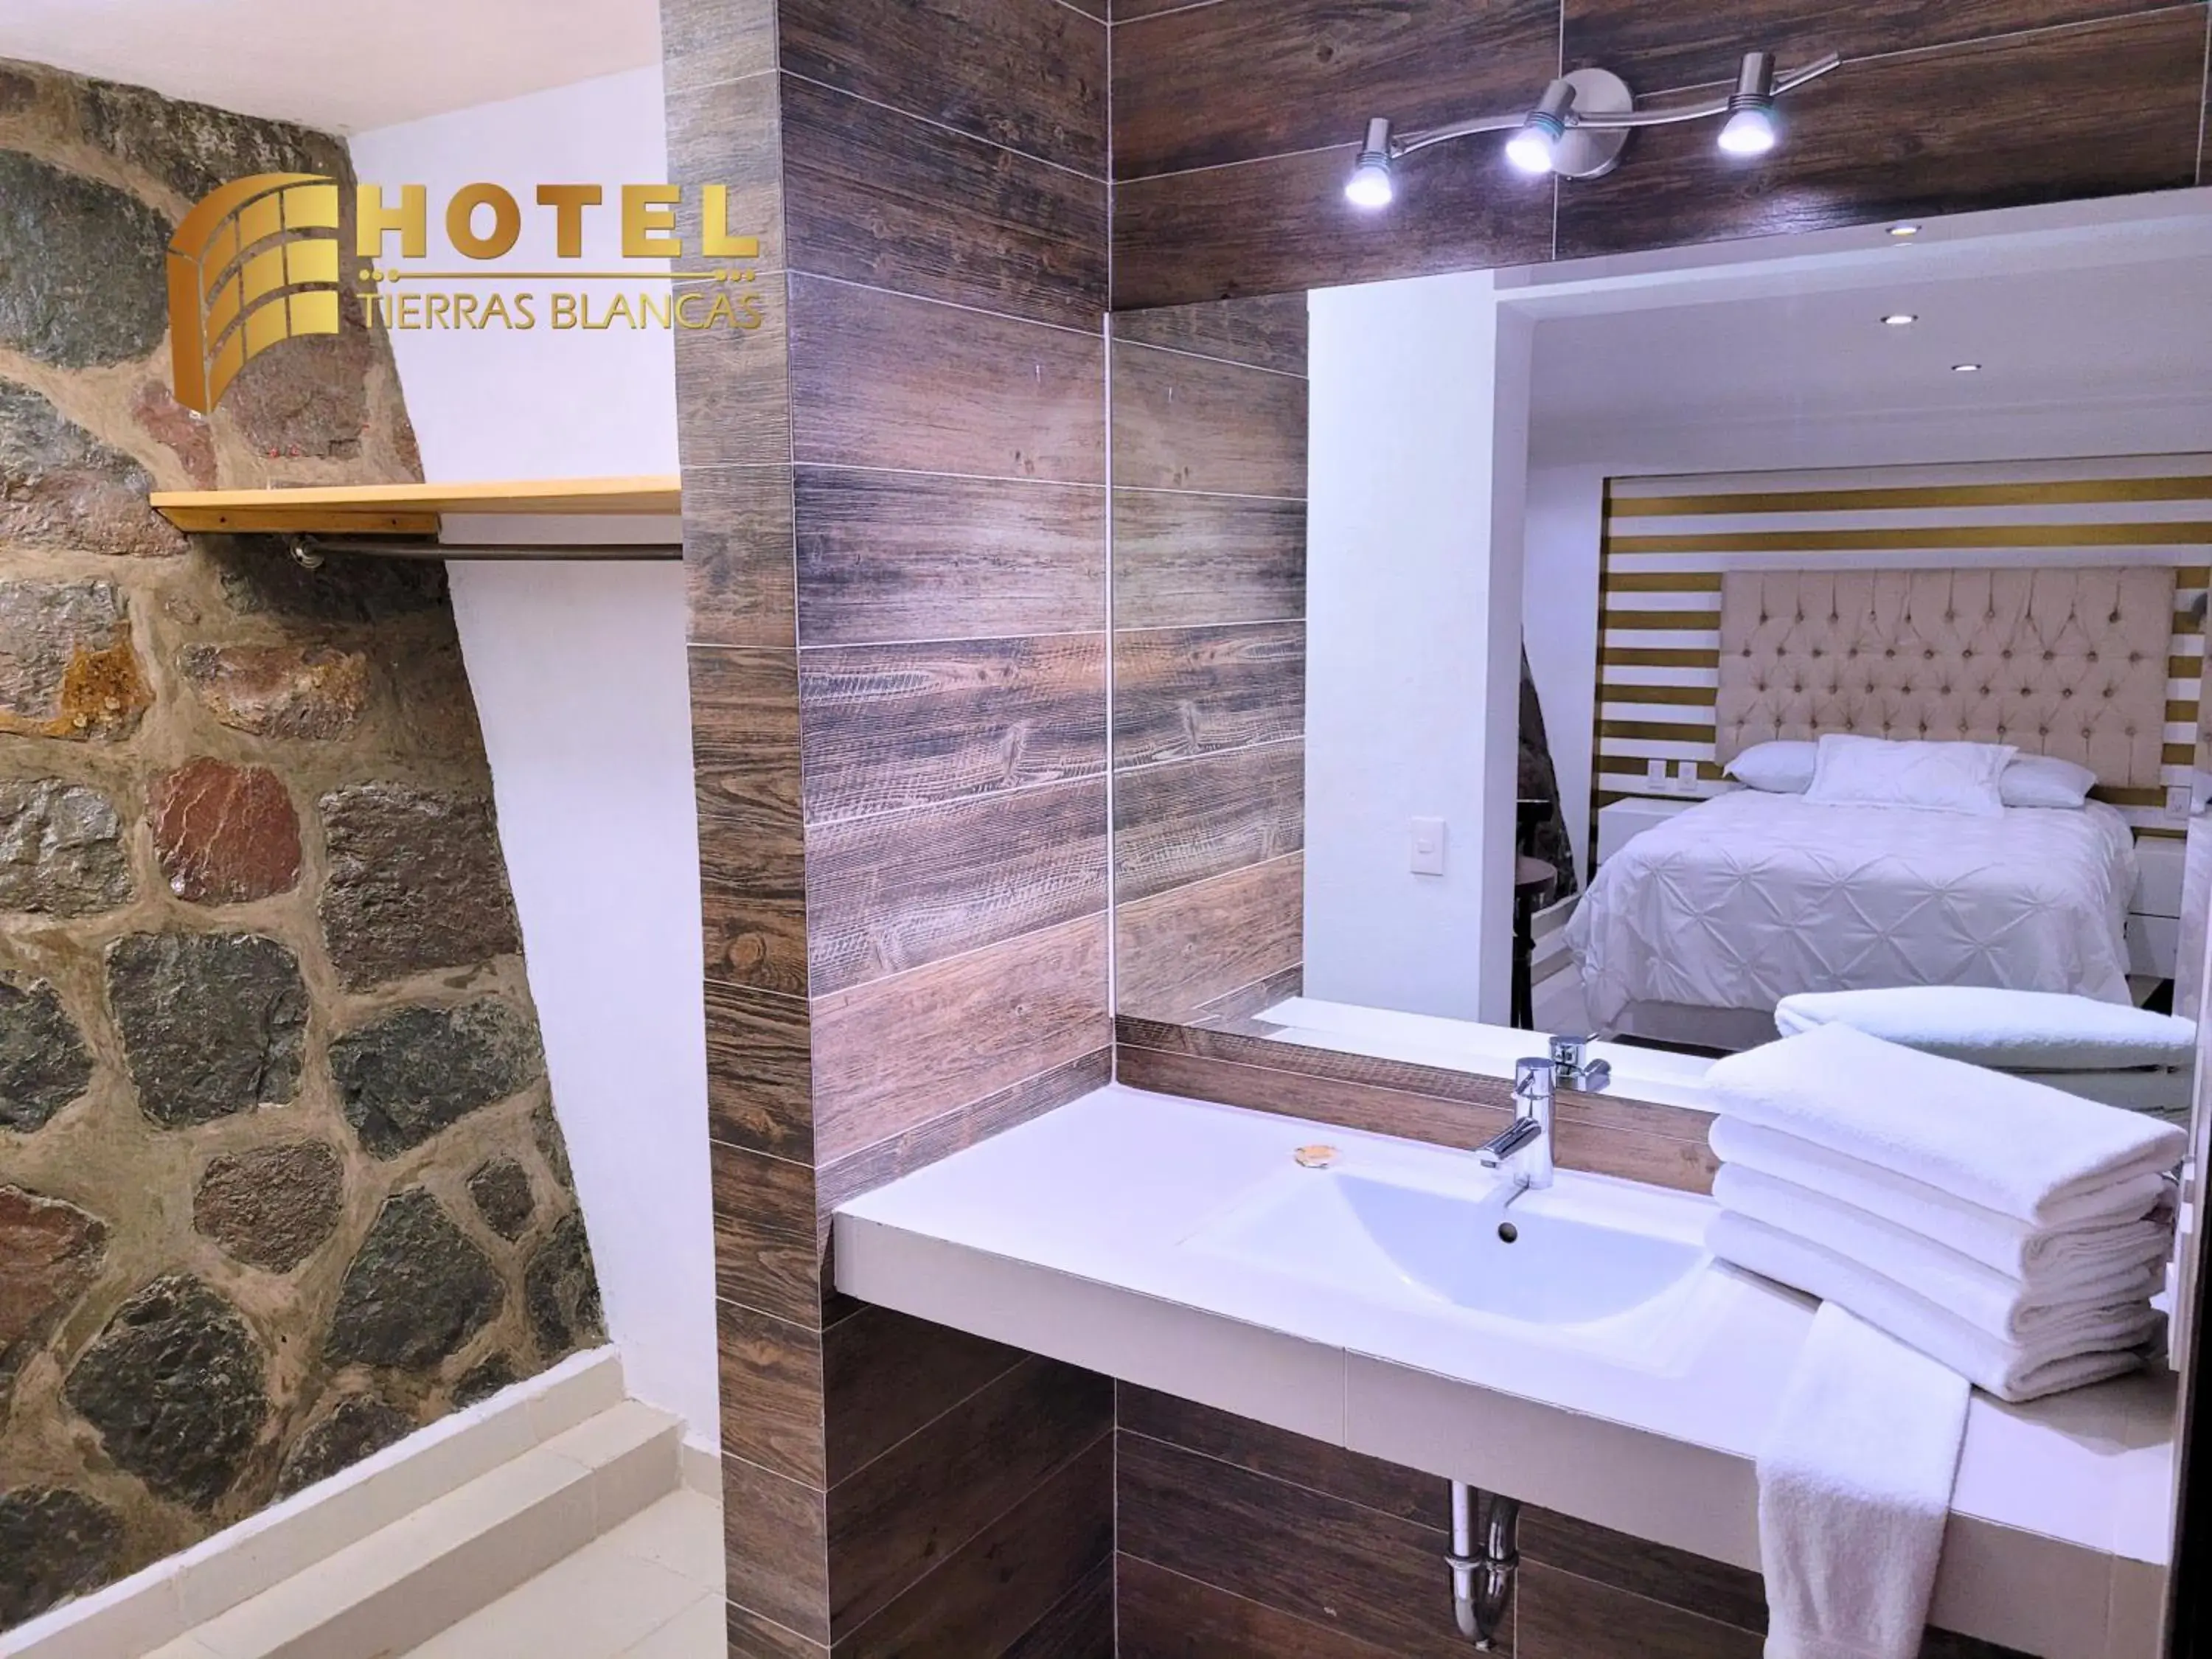 Bed, Bathroom in Hotel Tierras Blancas